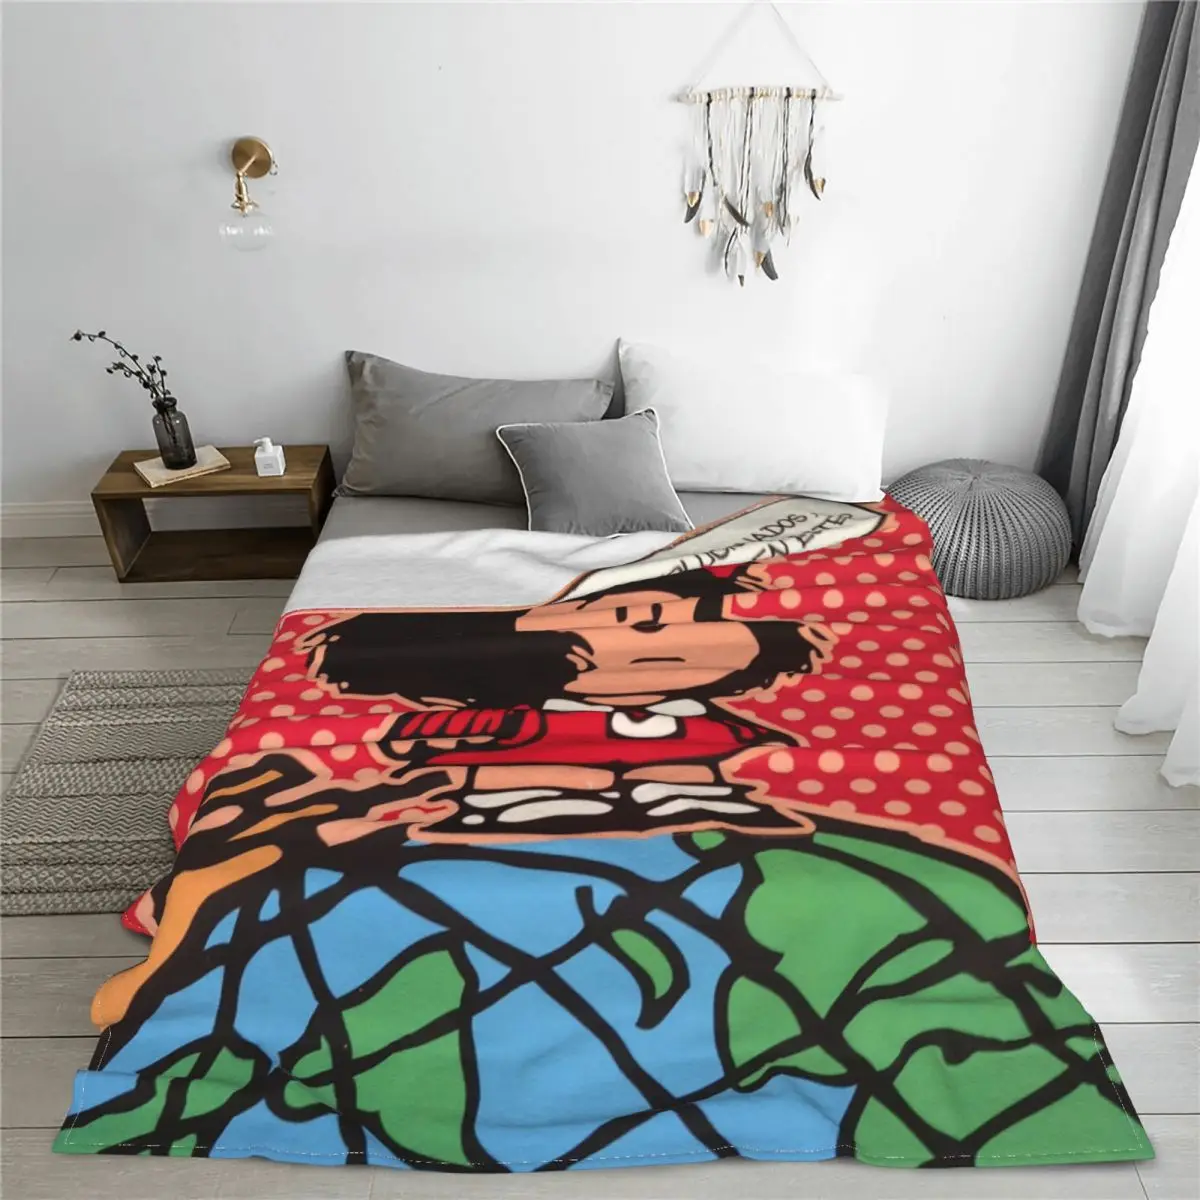 

Mafalda аниме плед одеяла флисовый текстиль Декор Kawaii Мультфильм многофункциональные теплые Пледы для дивана офиса постельное белье